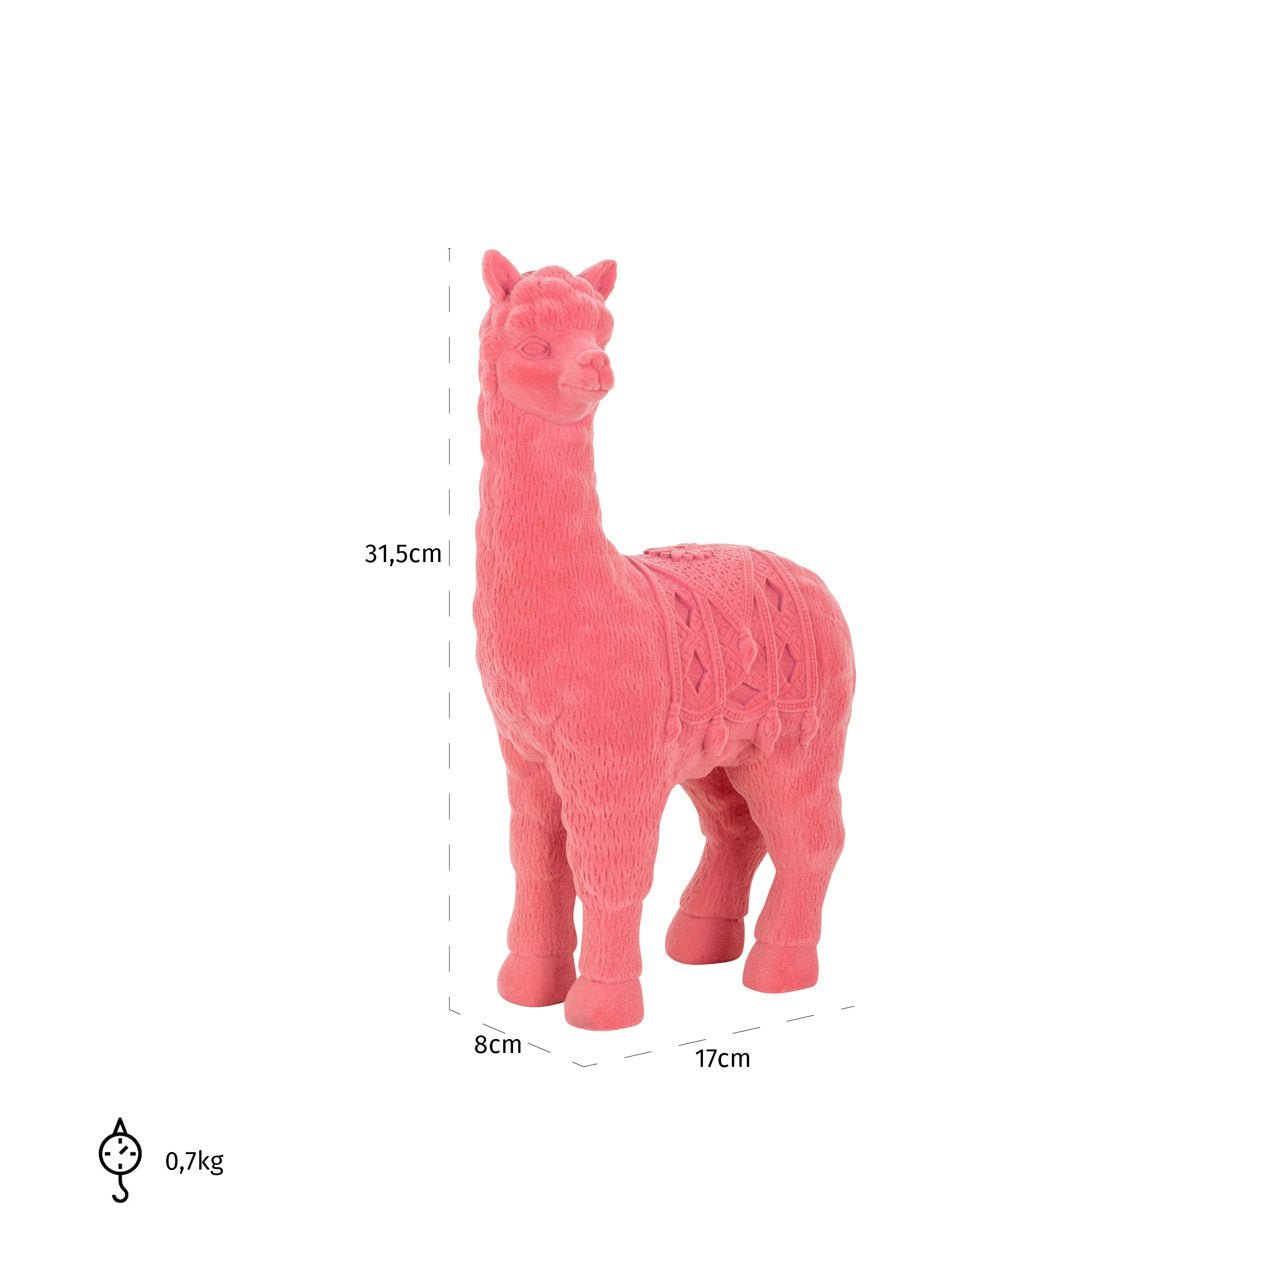 Maataanduiding van het gedetailleerde moderne roze alpaca beeldje van 31.5 cm hoog